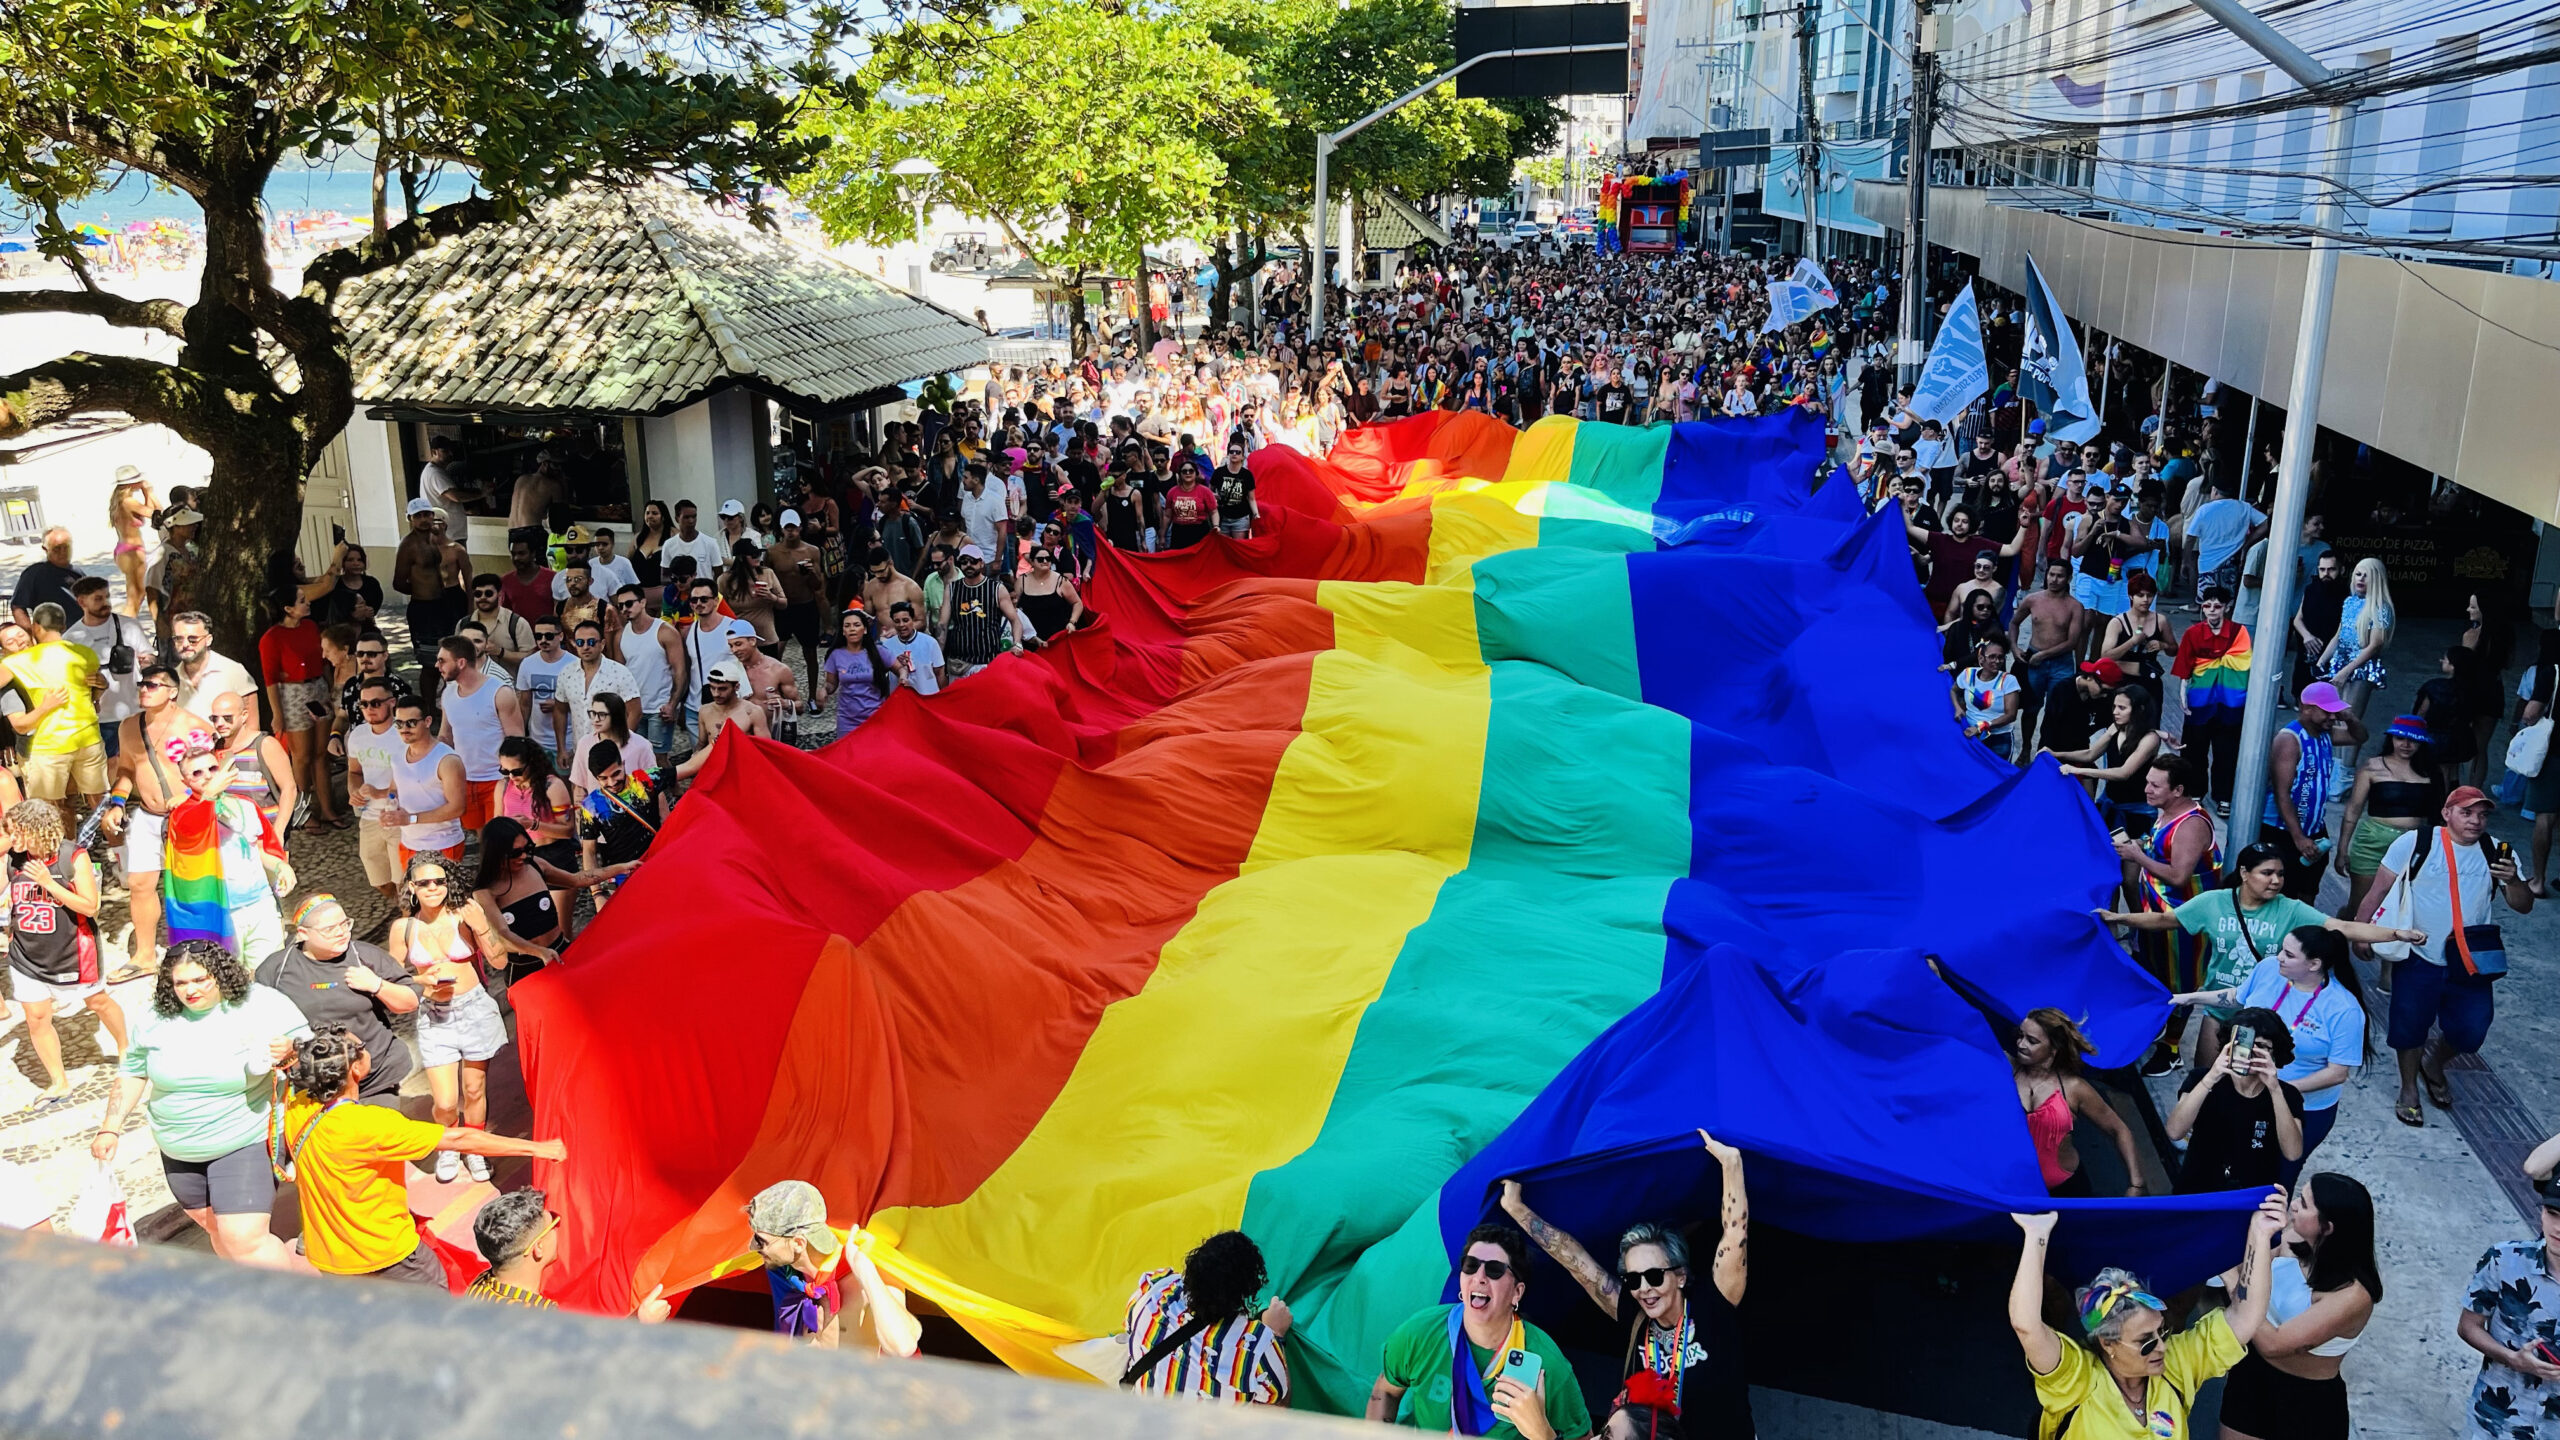 Marcha pela Diversidade leva 10 mil pessoas à Avenida Atlântica, em Balneário Camboriú